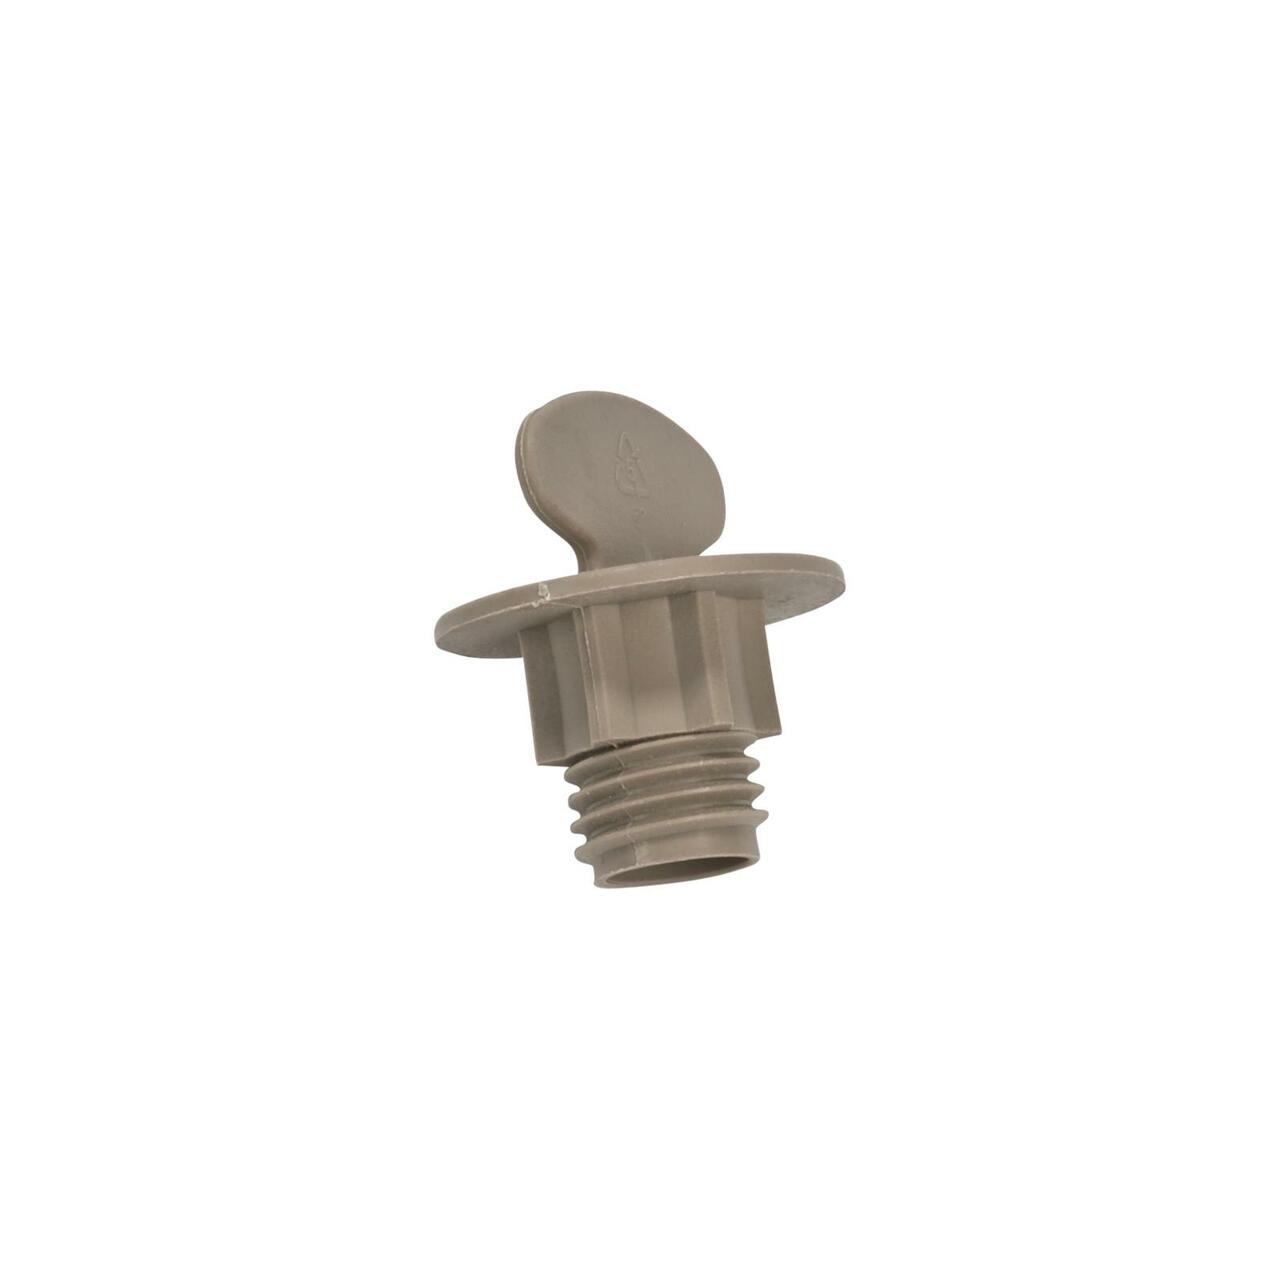 Whirlpool Dishwasher Spray Arm Retainer Nut. Part #WP9742945